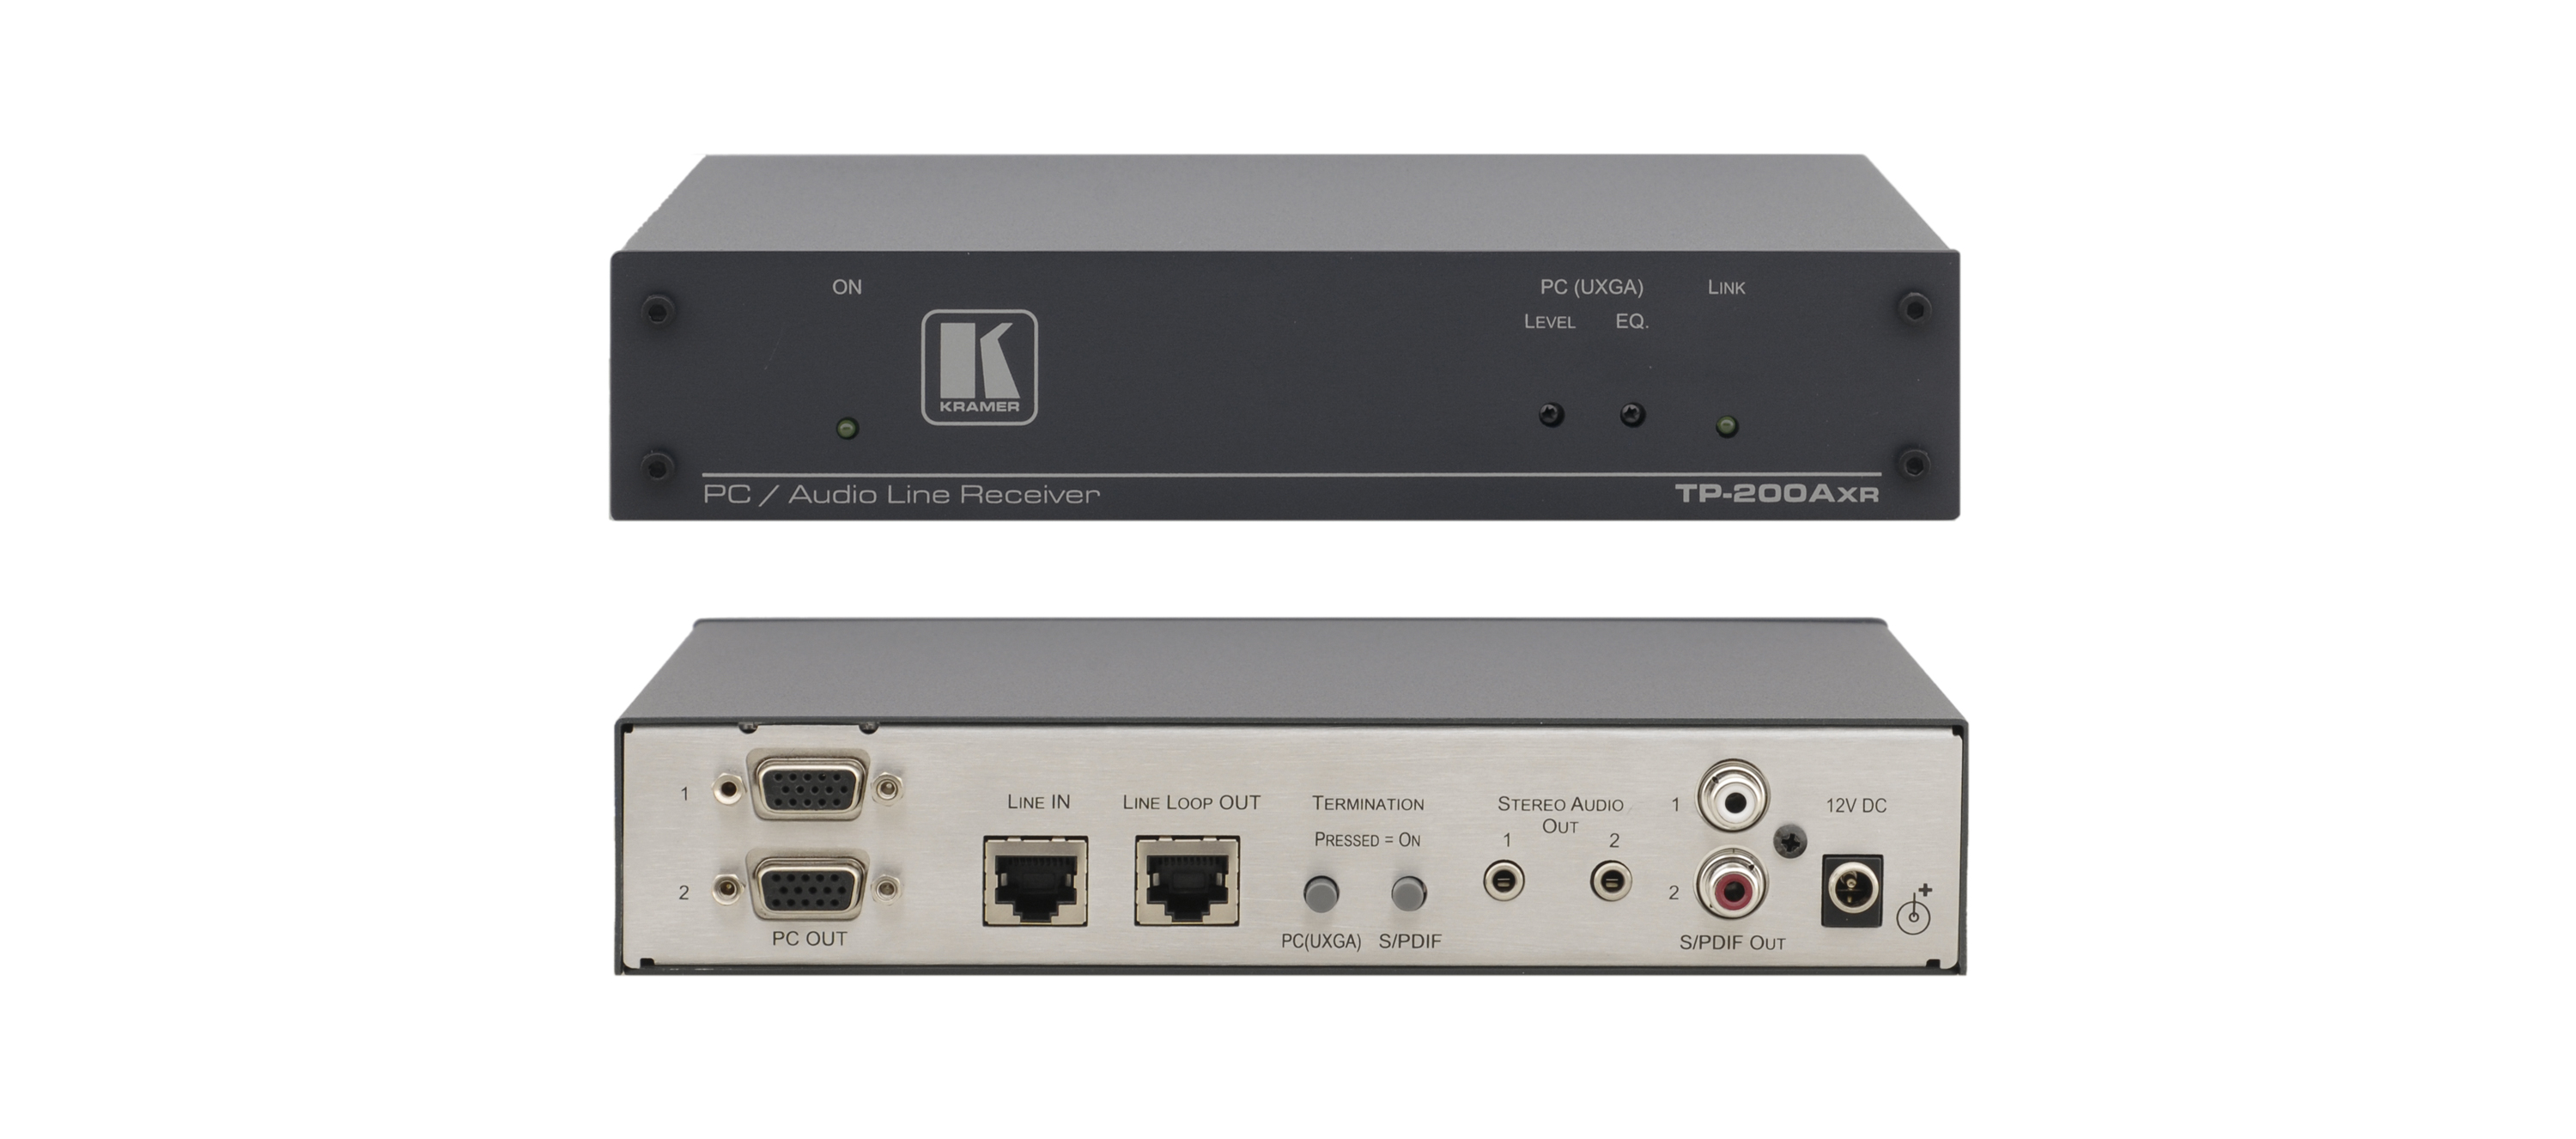 Приёмник и ретранслятор Kramer TP-200AXR и ретранслятор по витой паре (TP) сигналов VGA и звукового стерео по витой паре, с 2 выходами VGA и аудио (3,5-мм розетки и S/PDIF), совместим с HDTV, длина линии передачи до 200м, Power Connect